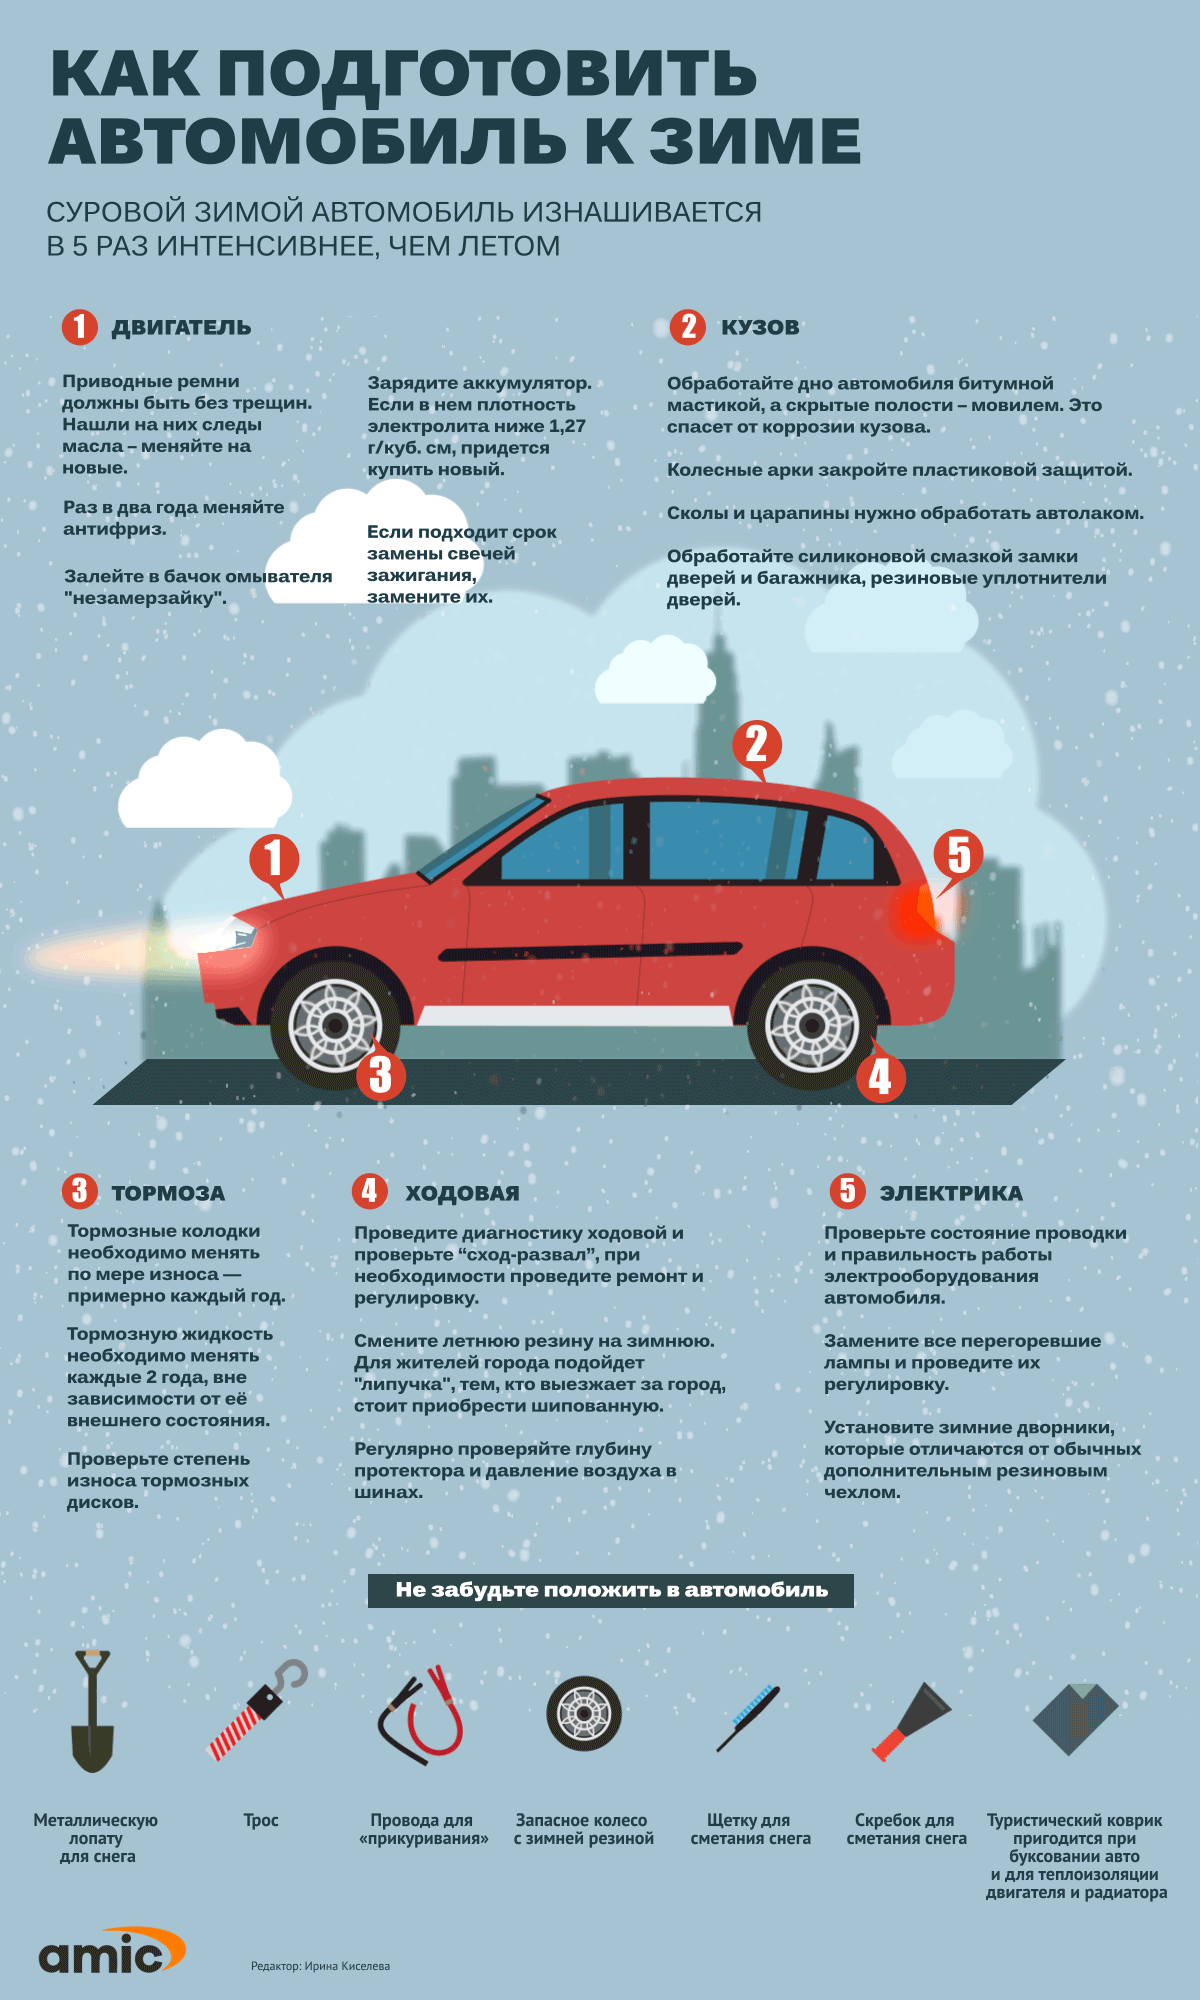 Подготовка автомобиля к зиме: полезные советы и рекомендации